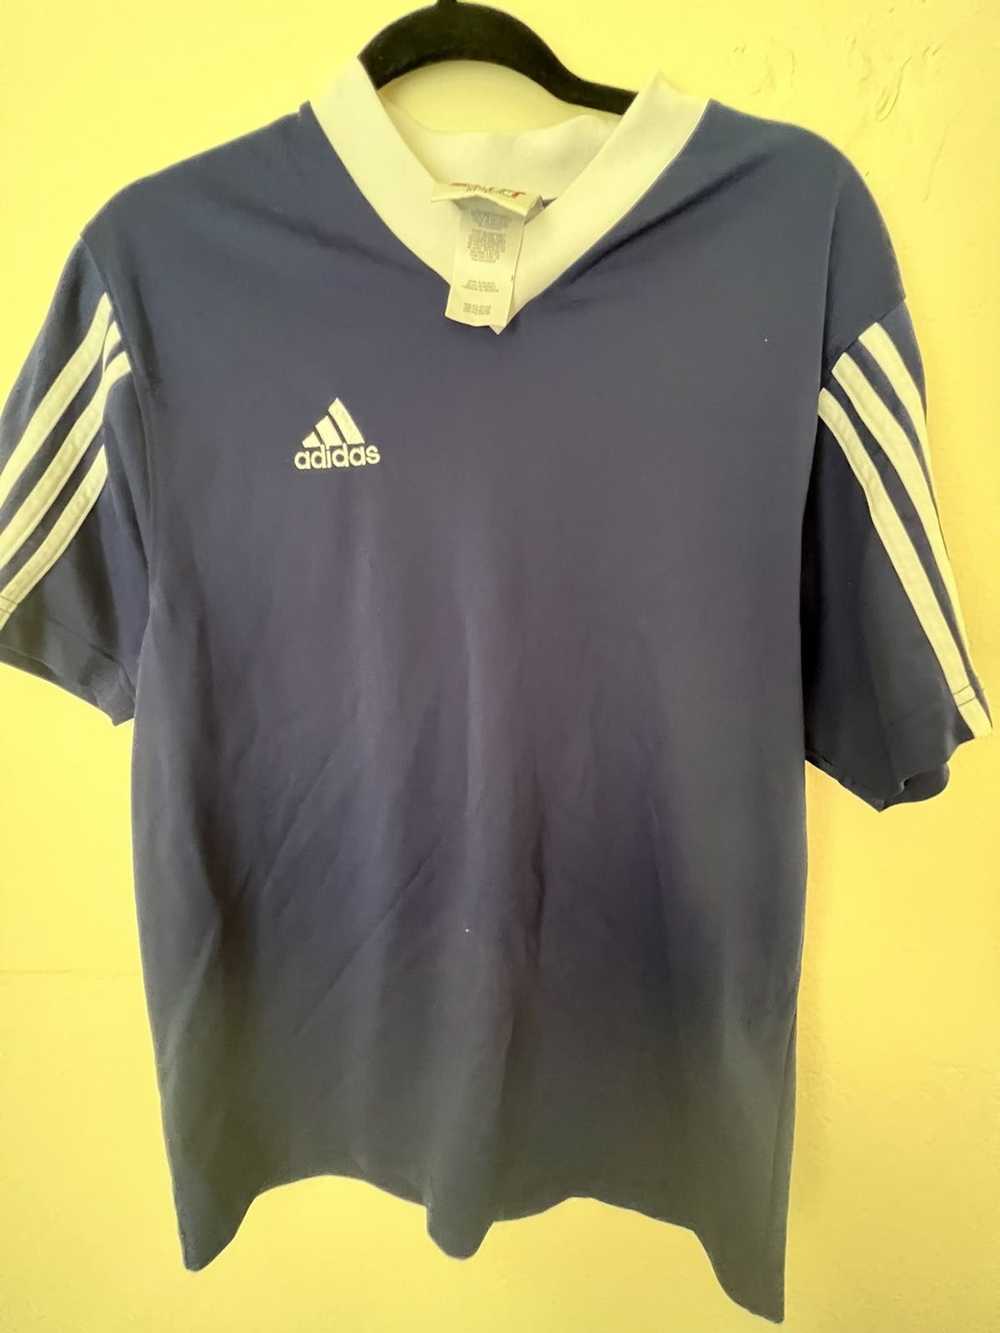 Adidas × Vintage Vtg adidas soccer jersey medium … - image 2